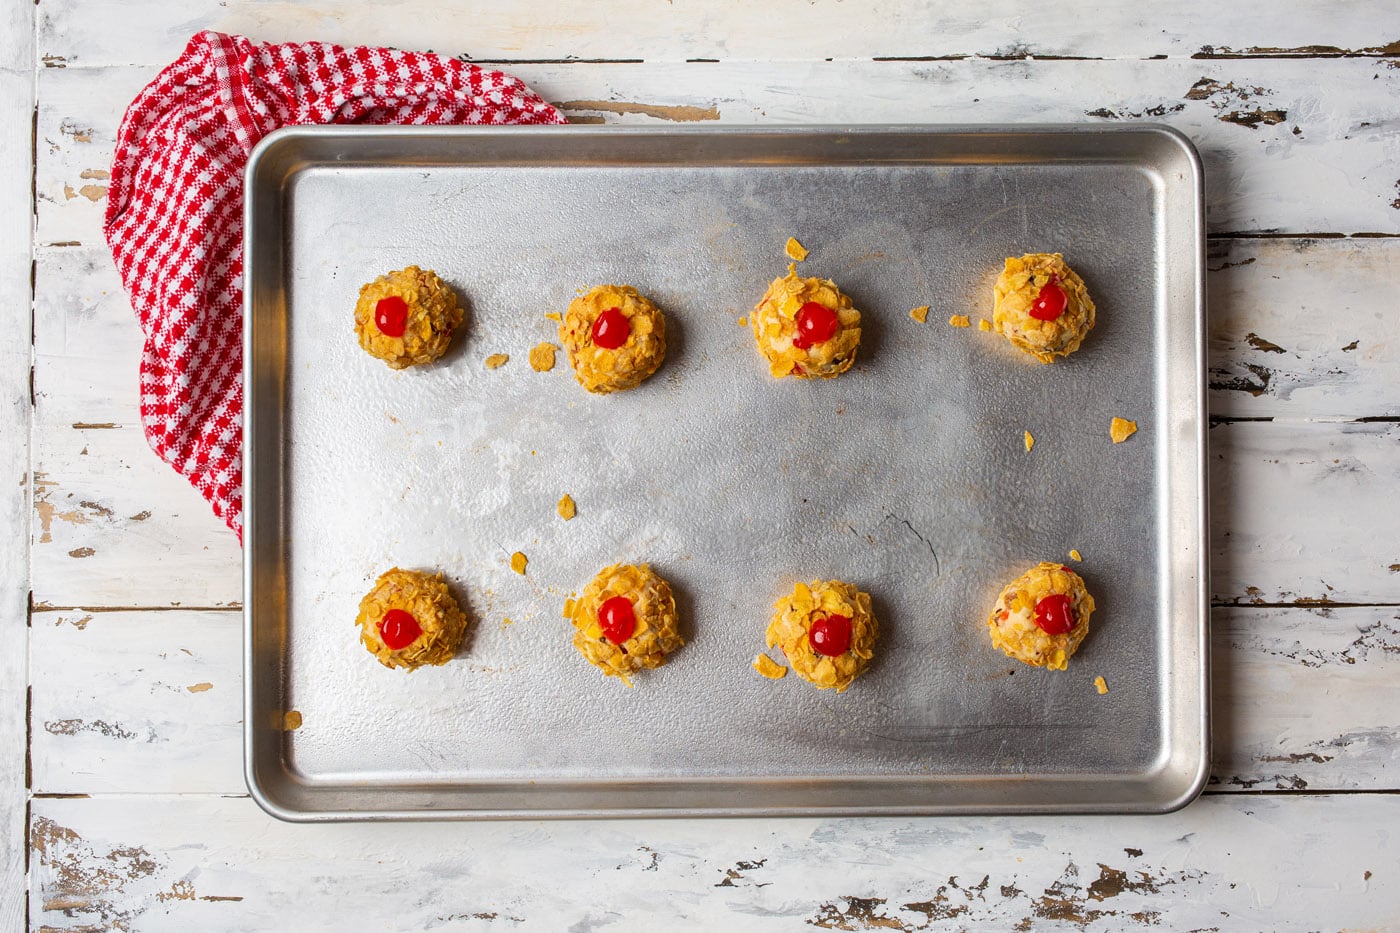 cherry wink cookie dough balls on a baking sheet